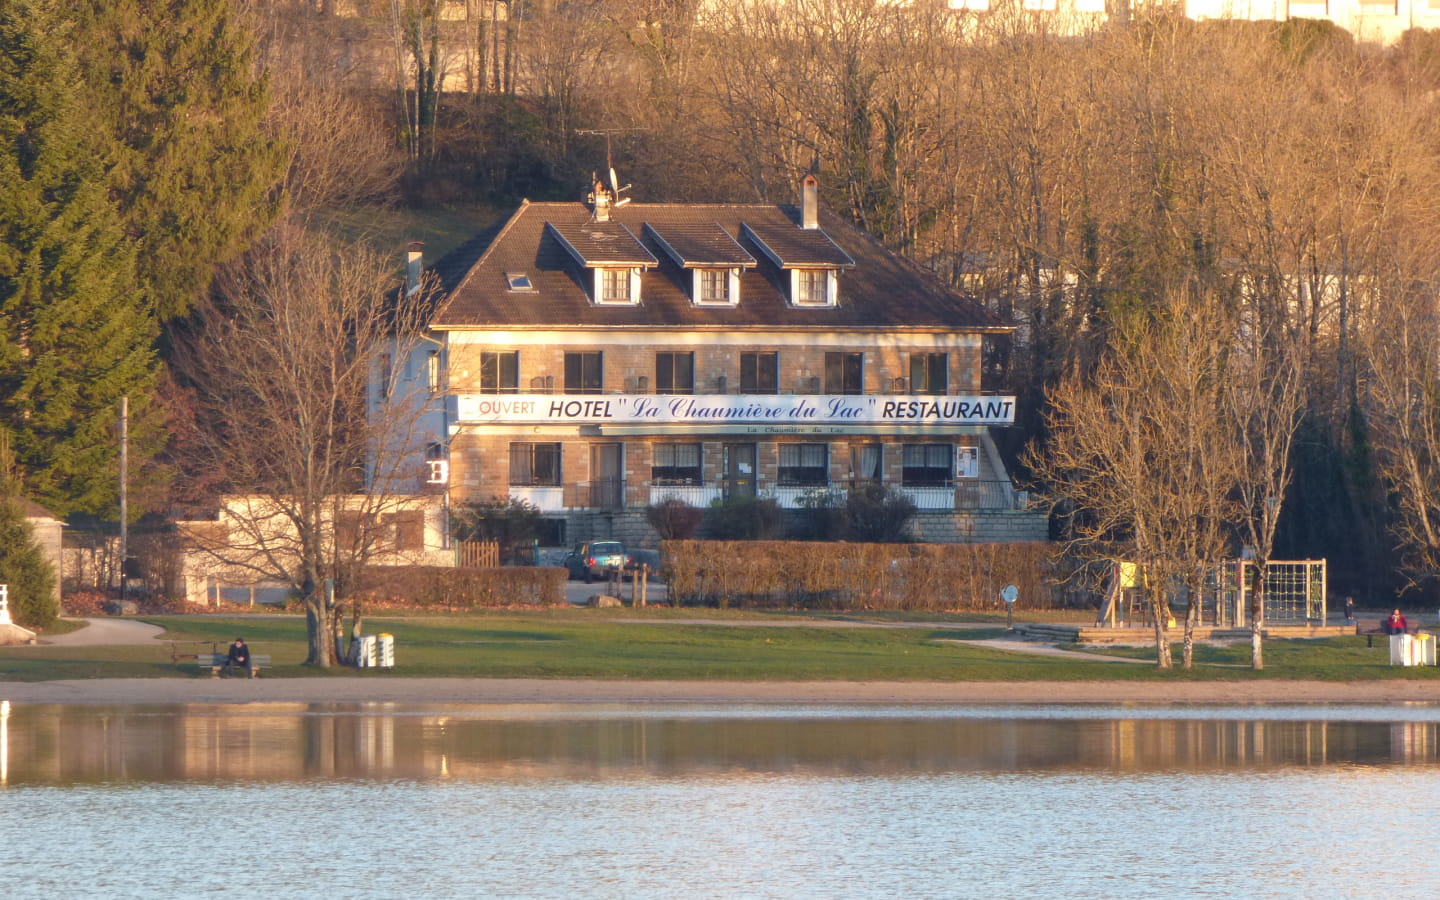 Hôtel La Chaumière du Lac